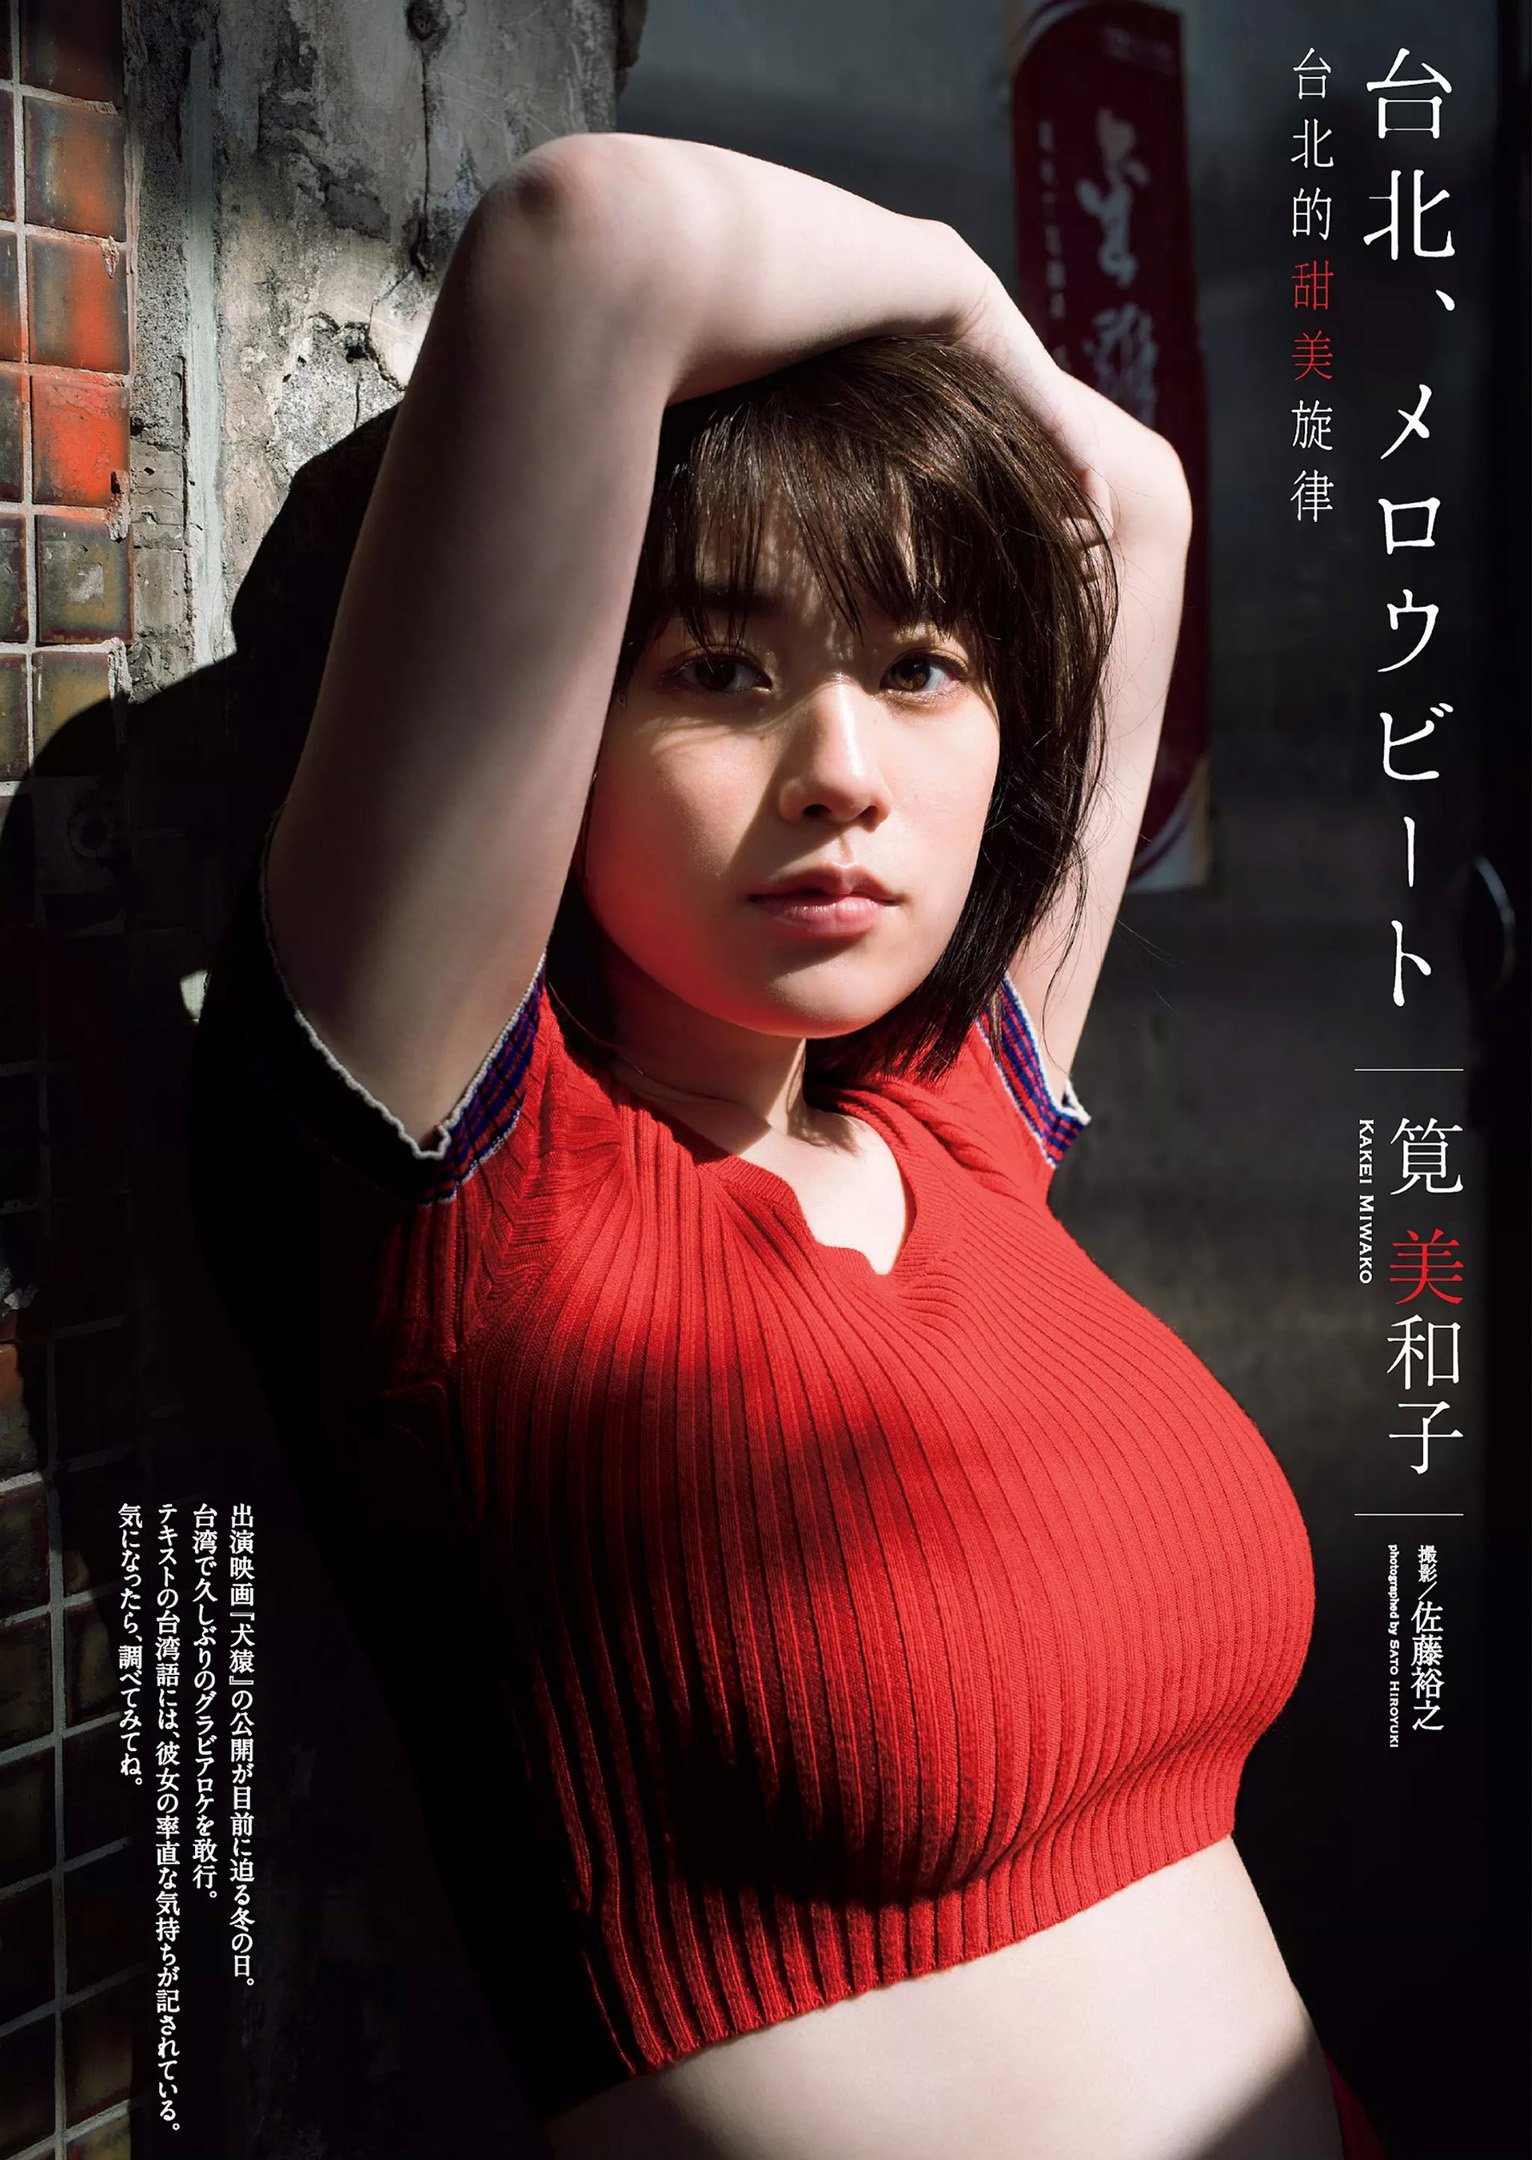 카케이 미와코(筧美和子, かけい みわこ) - 주간 플레이보이 2018 No.7